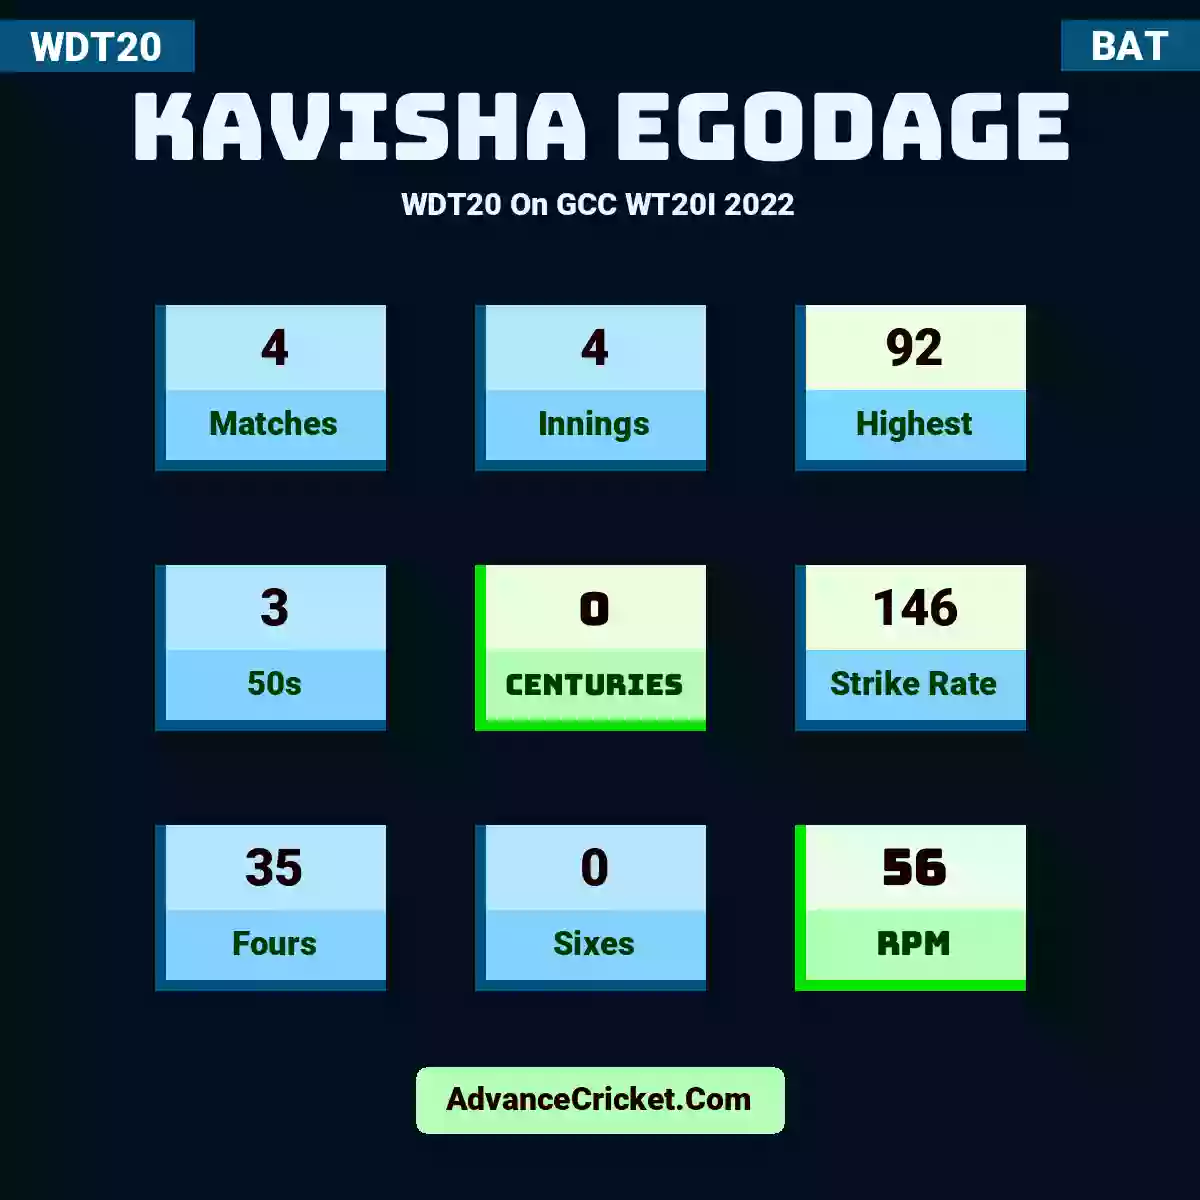 Kavisha Egodage WDT20  On GCC WT20I 2022, Kavisha Egodage played 4 matches, scored 92 runs as highest, 3 half-centuries, and 0 centuries, with a strike rate of 146. K.Egodage hit 35 fours and 0 sixes, with an RPM of 56.